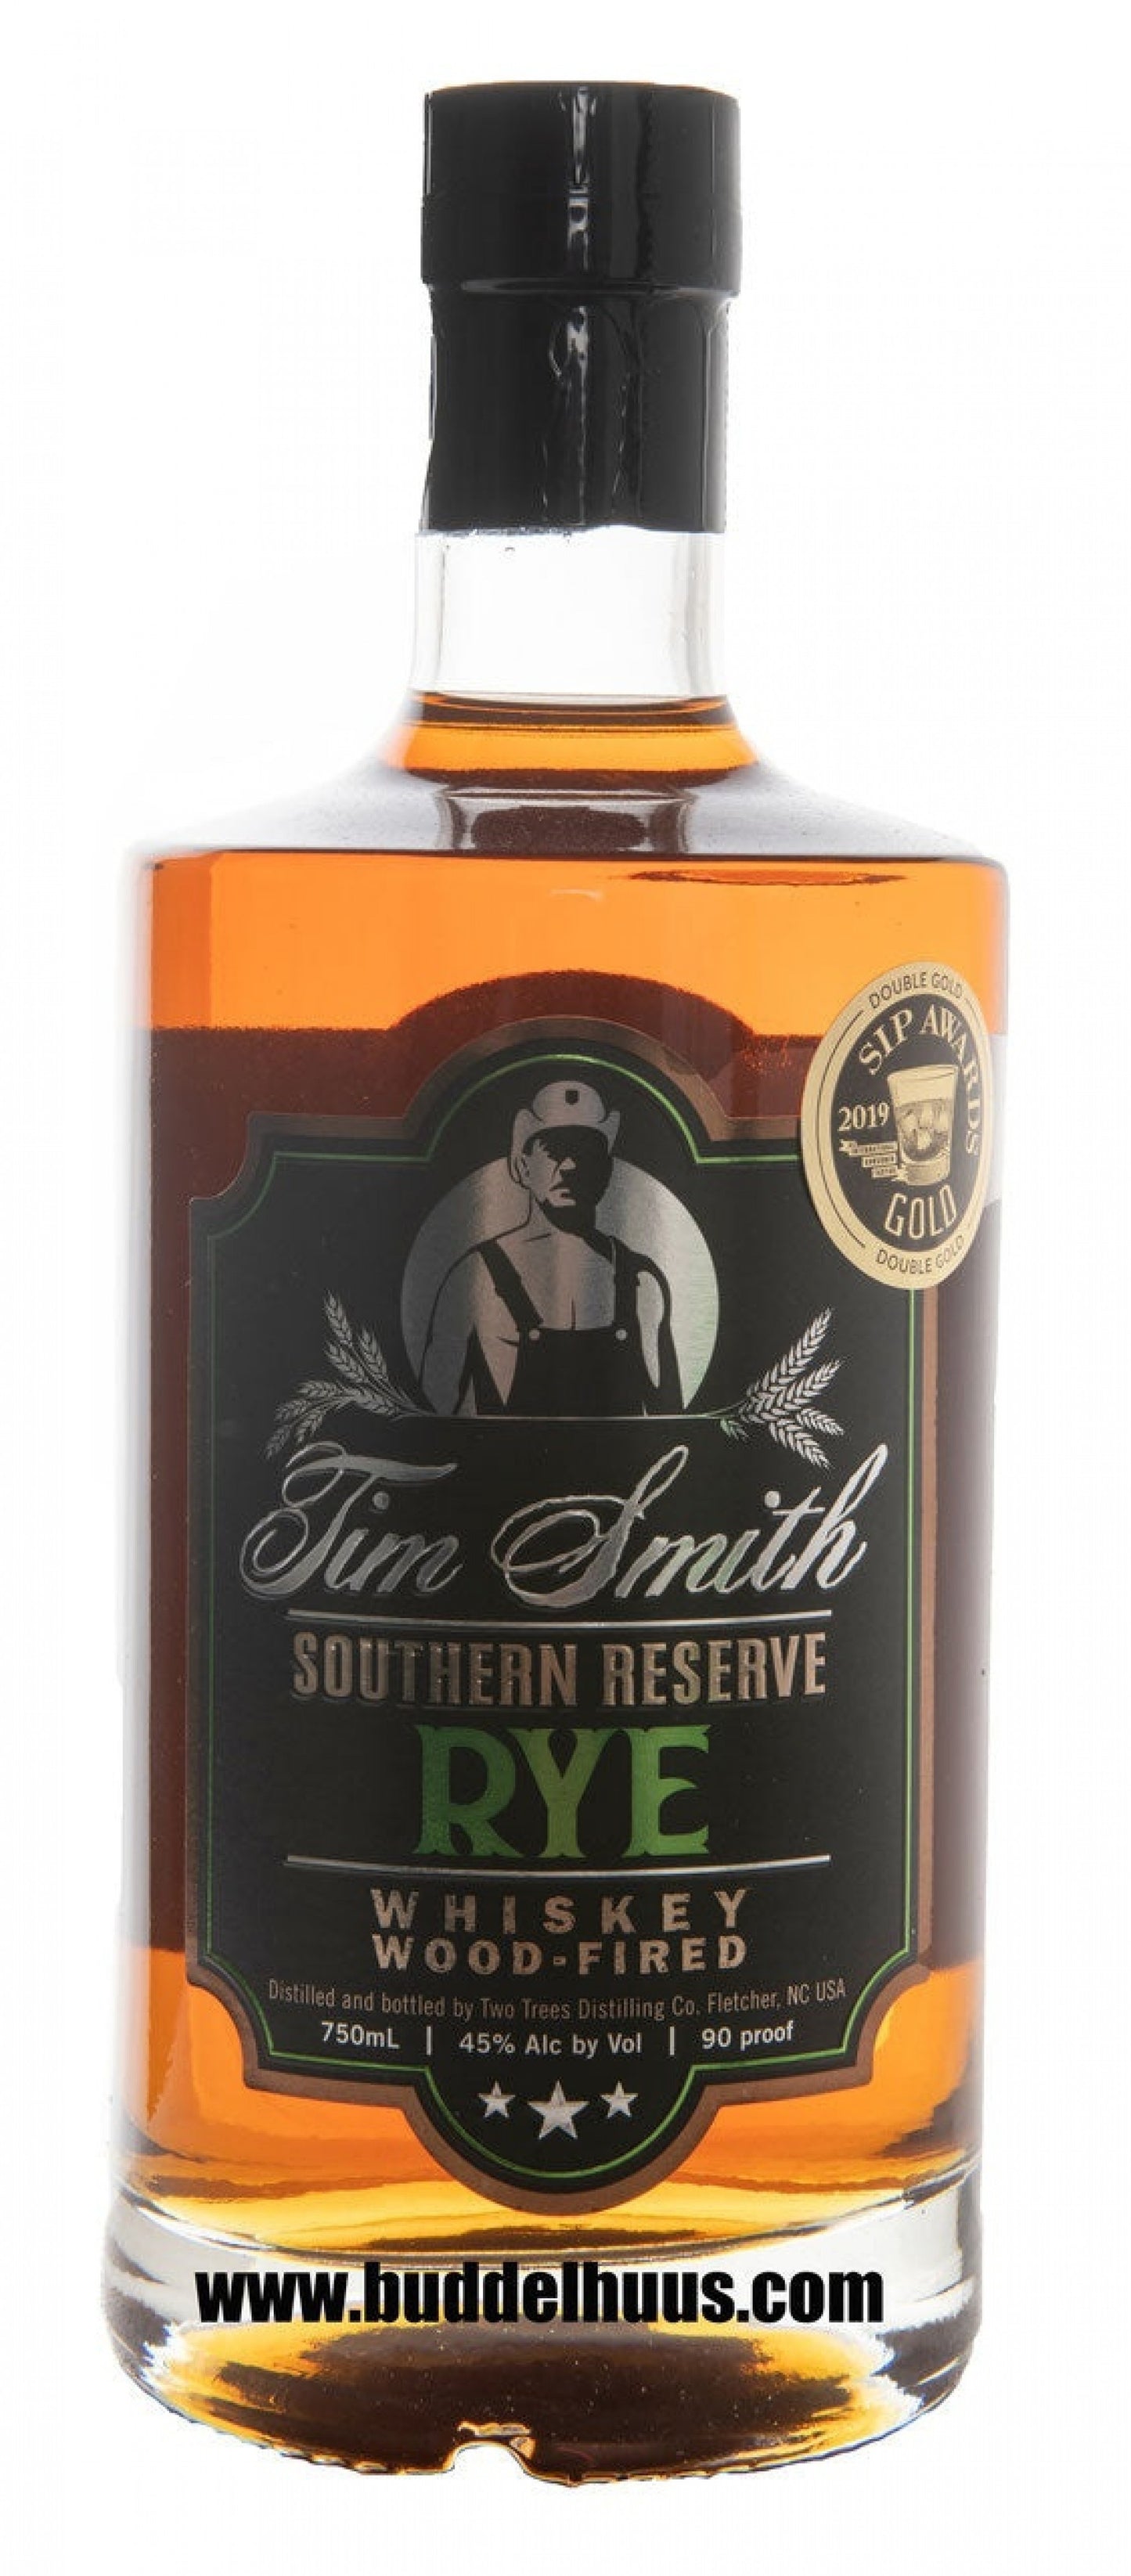 Tim Smith's Southern Reserve Rye Whiskey